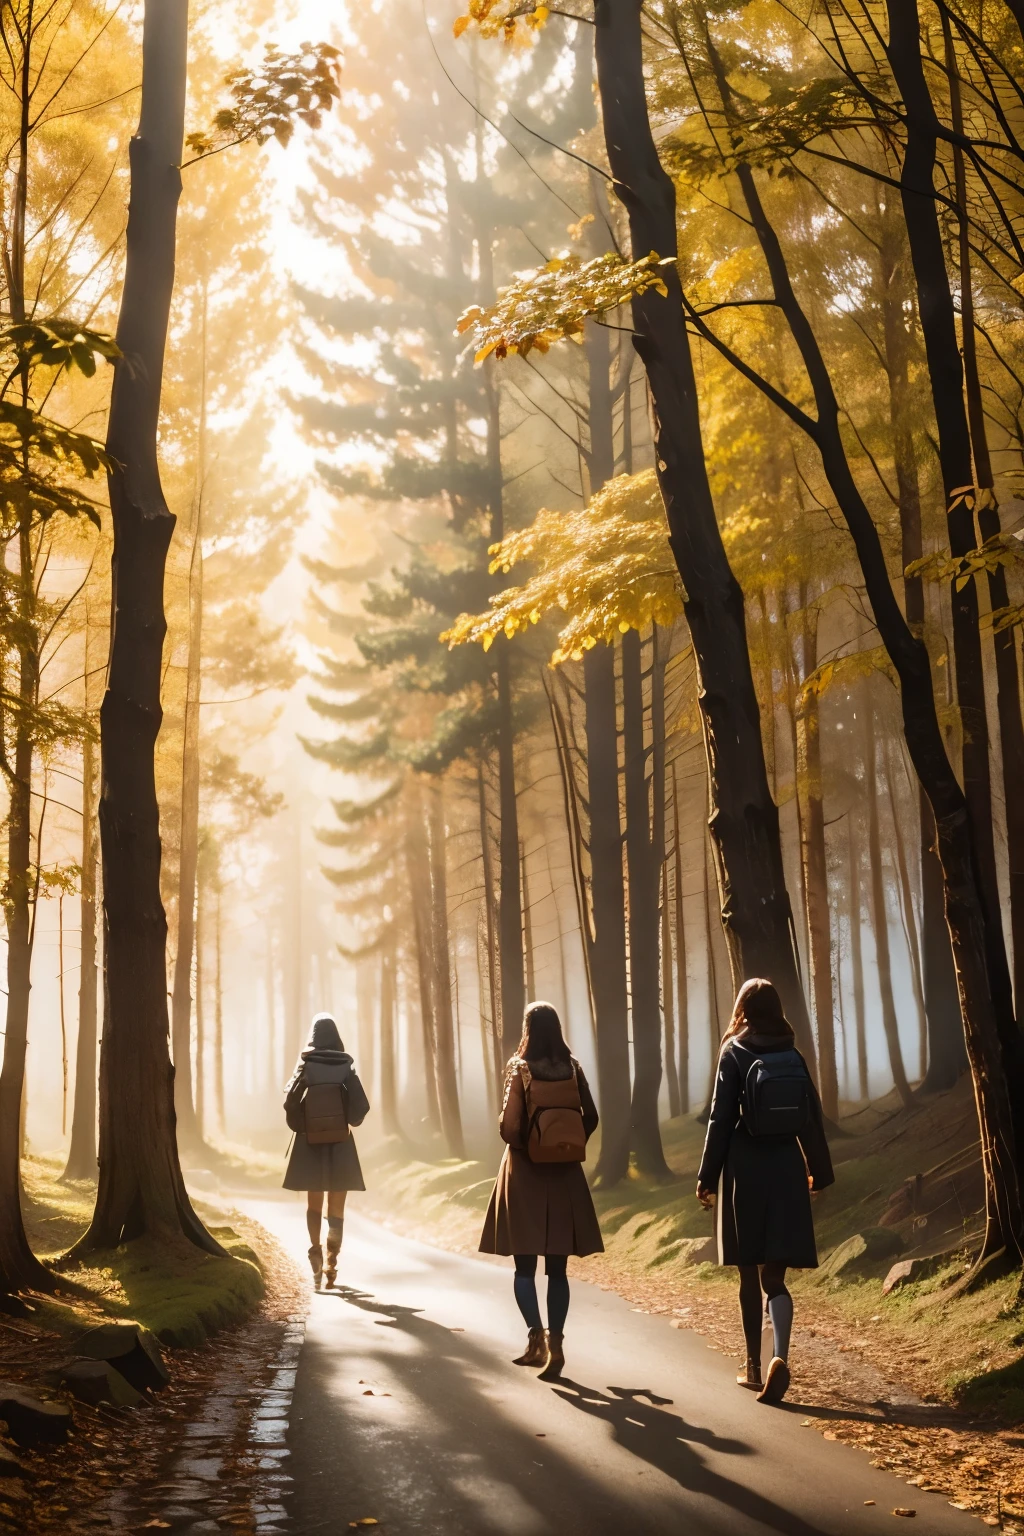 tres niñas en un camino a través del bosque, niebla, paisaje de otoño, sunlight filtering through the niebla and branches